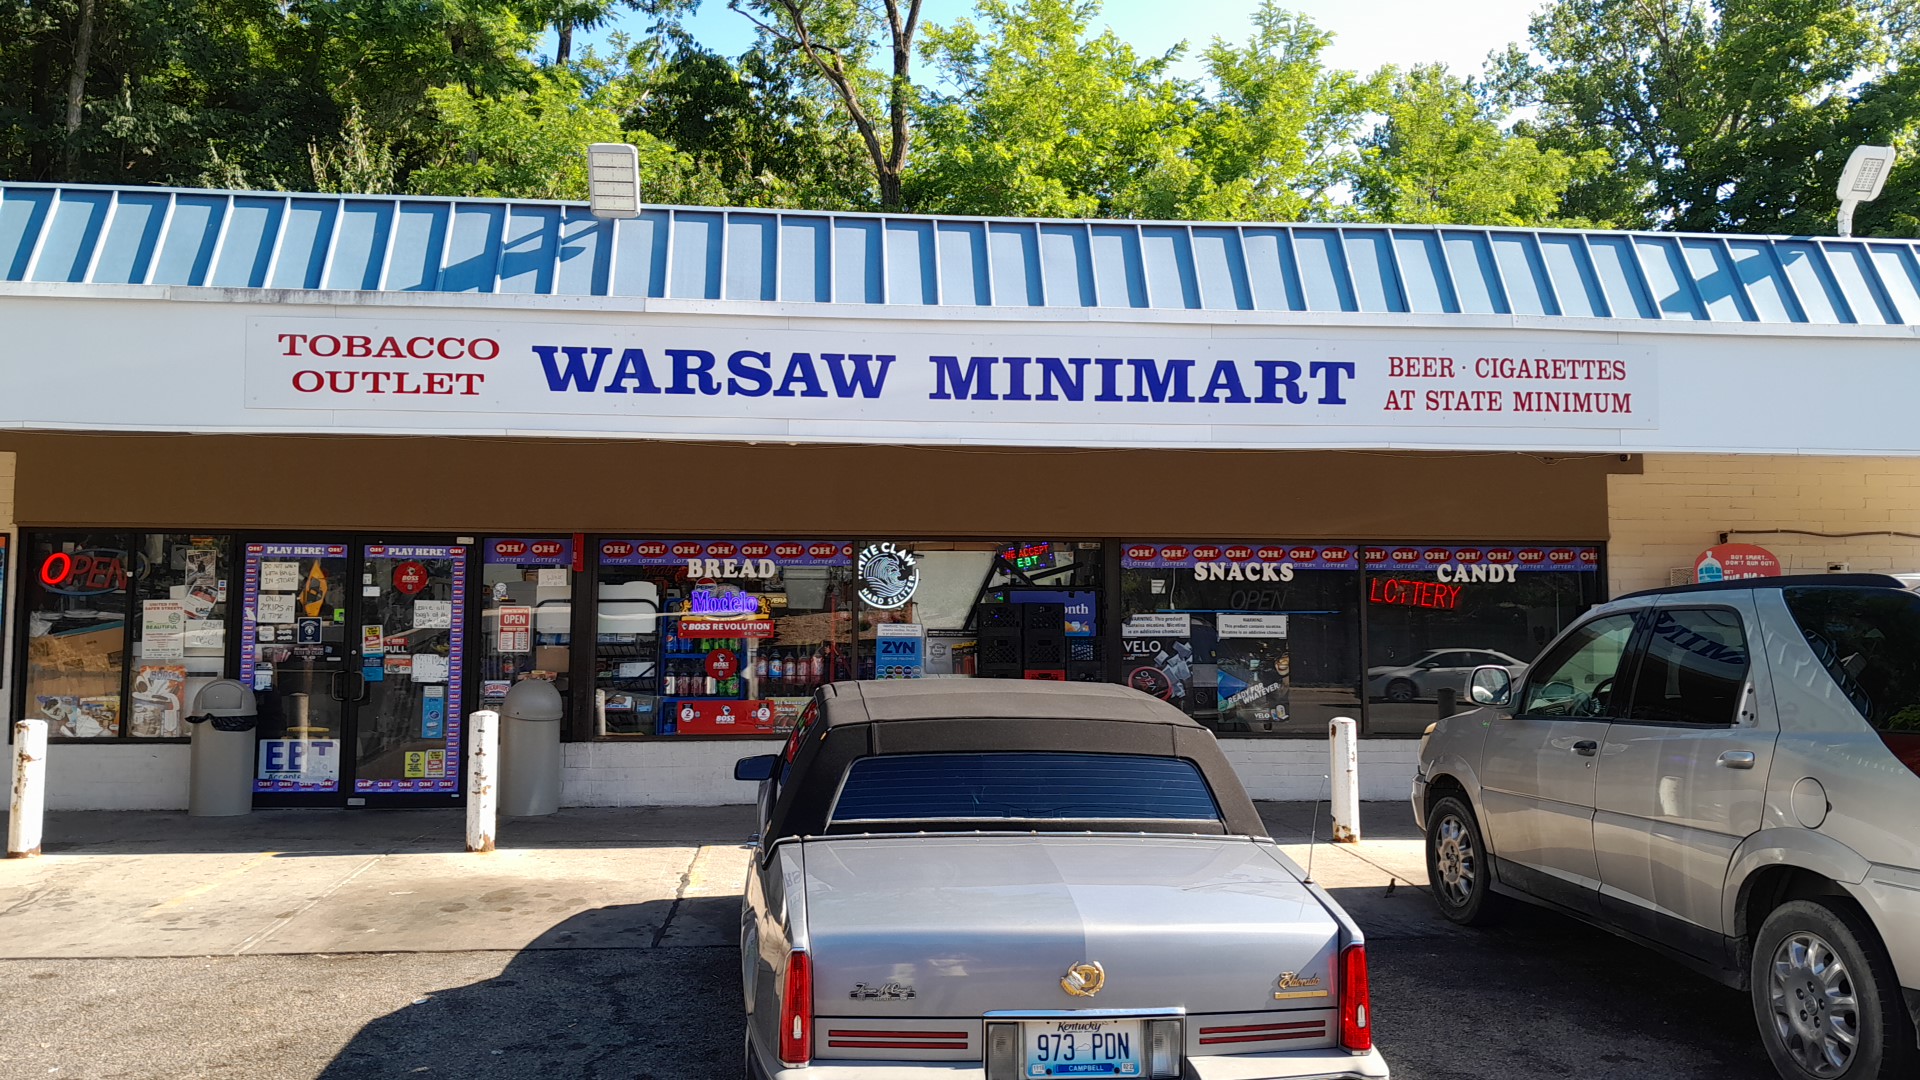 Warsaw MiniMart